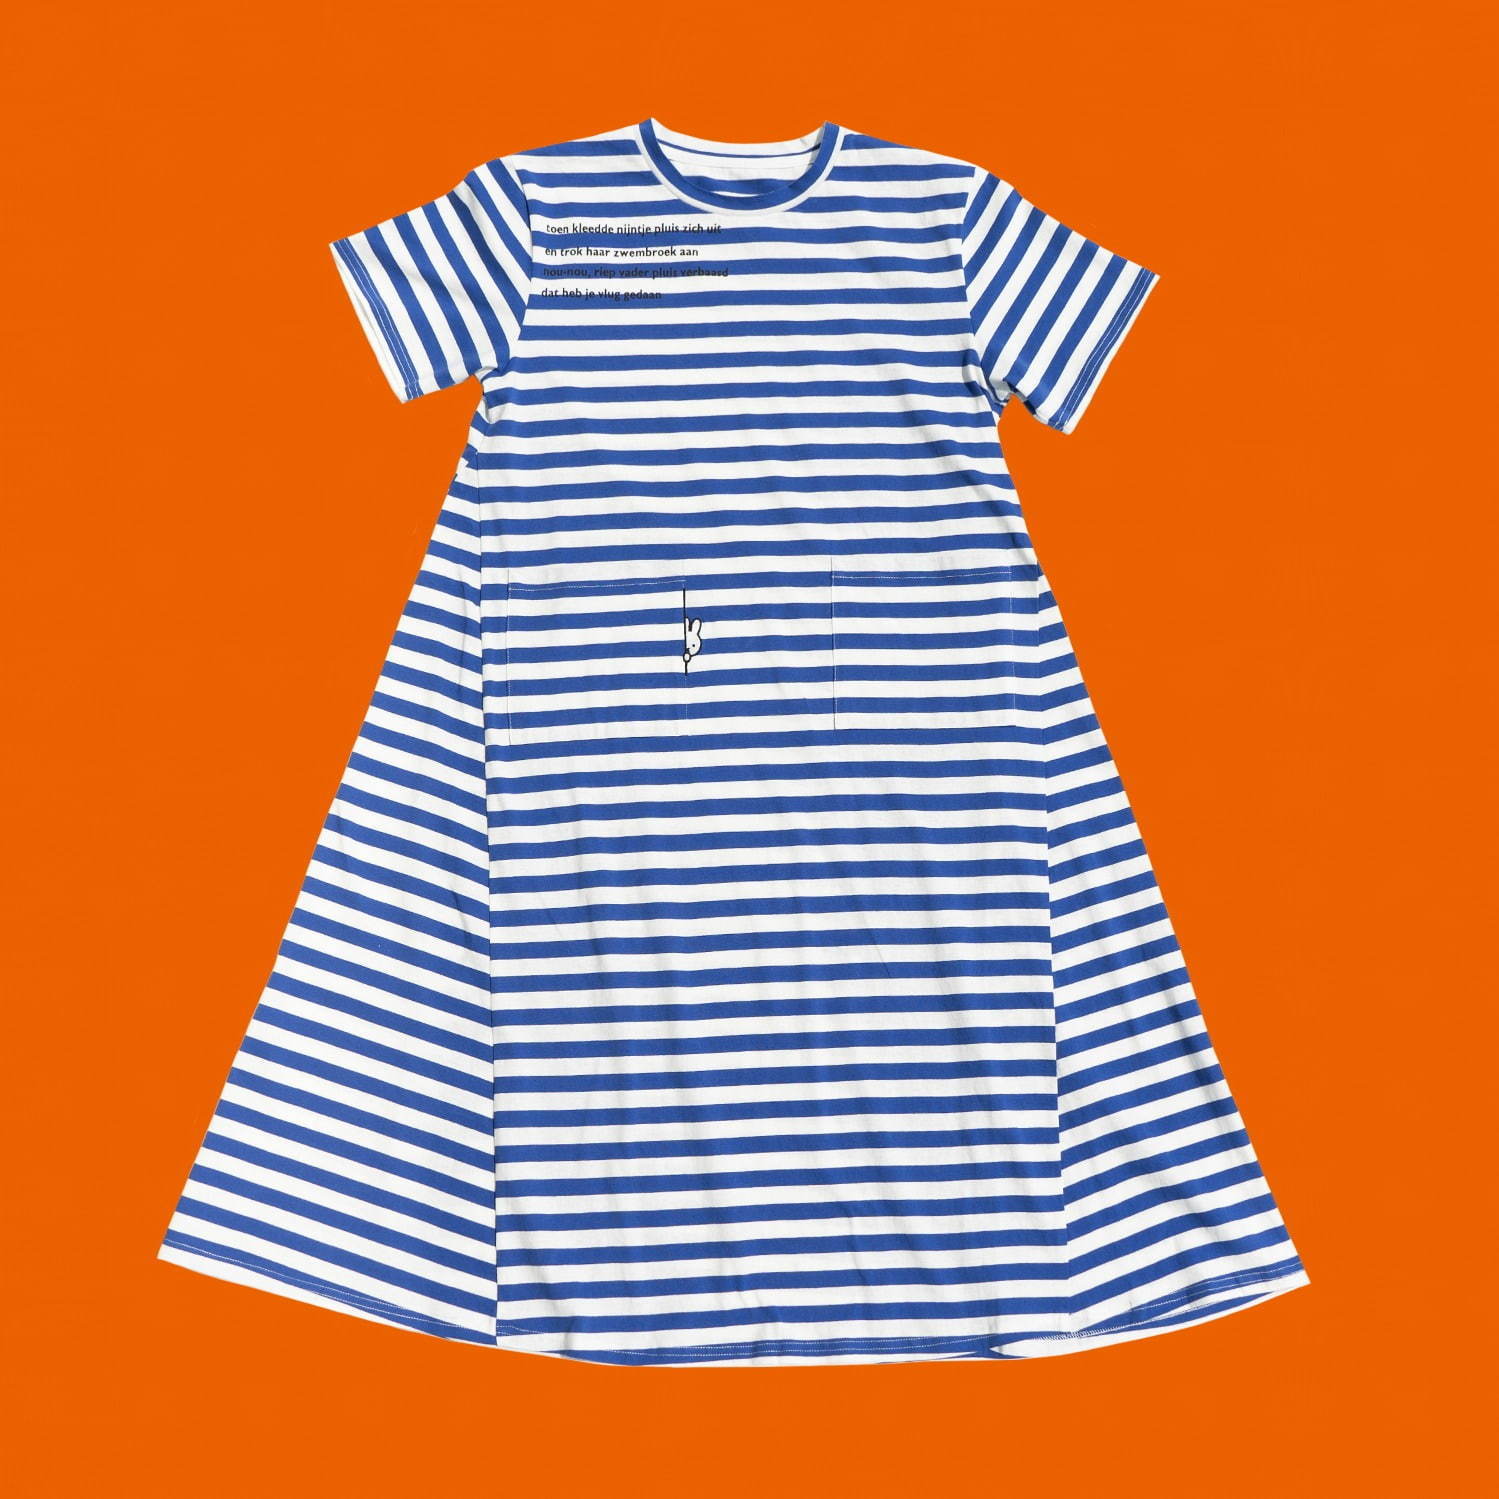 ミッフィー生誕65周年企画 はいけい ディック ブルーナ から夏の新作ボーダーワンピース Tシャツ ファッションプレス